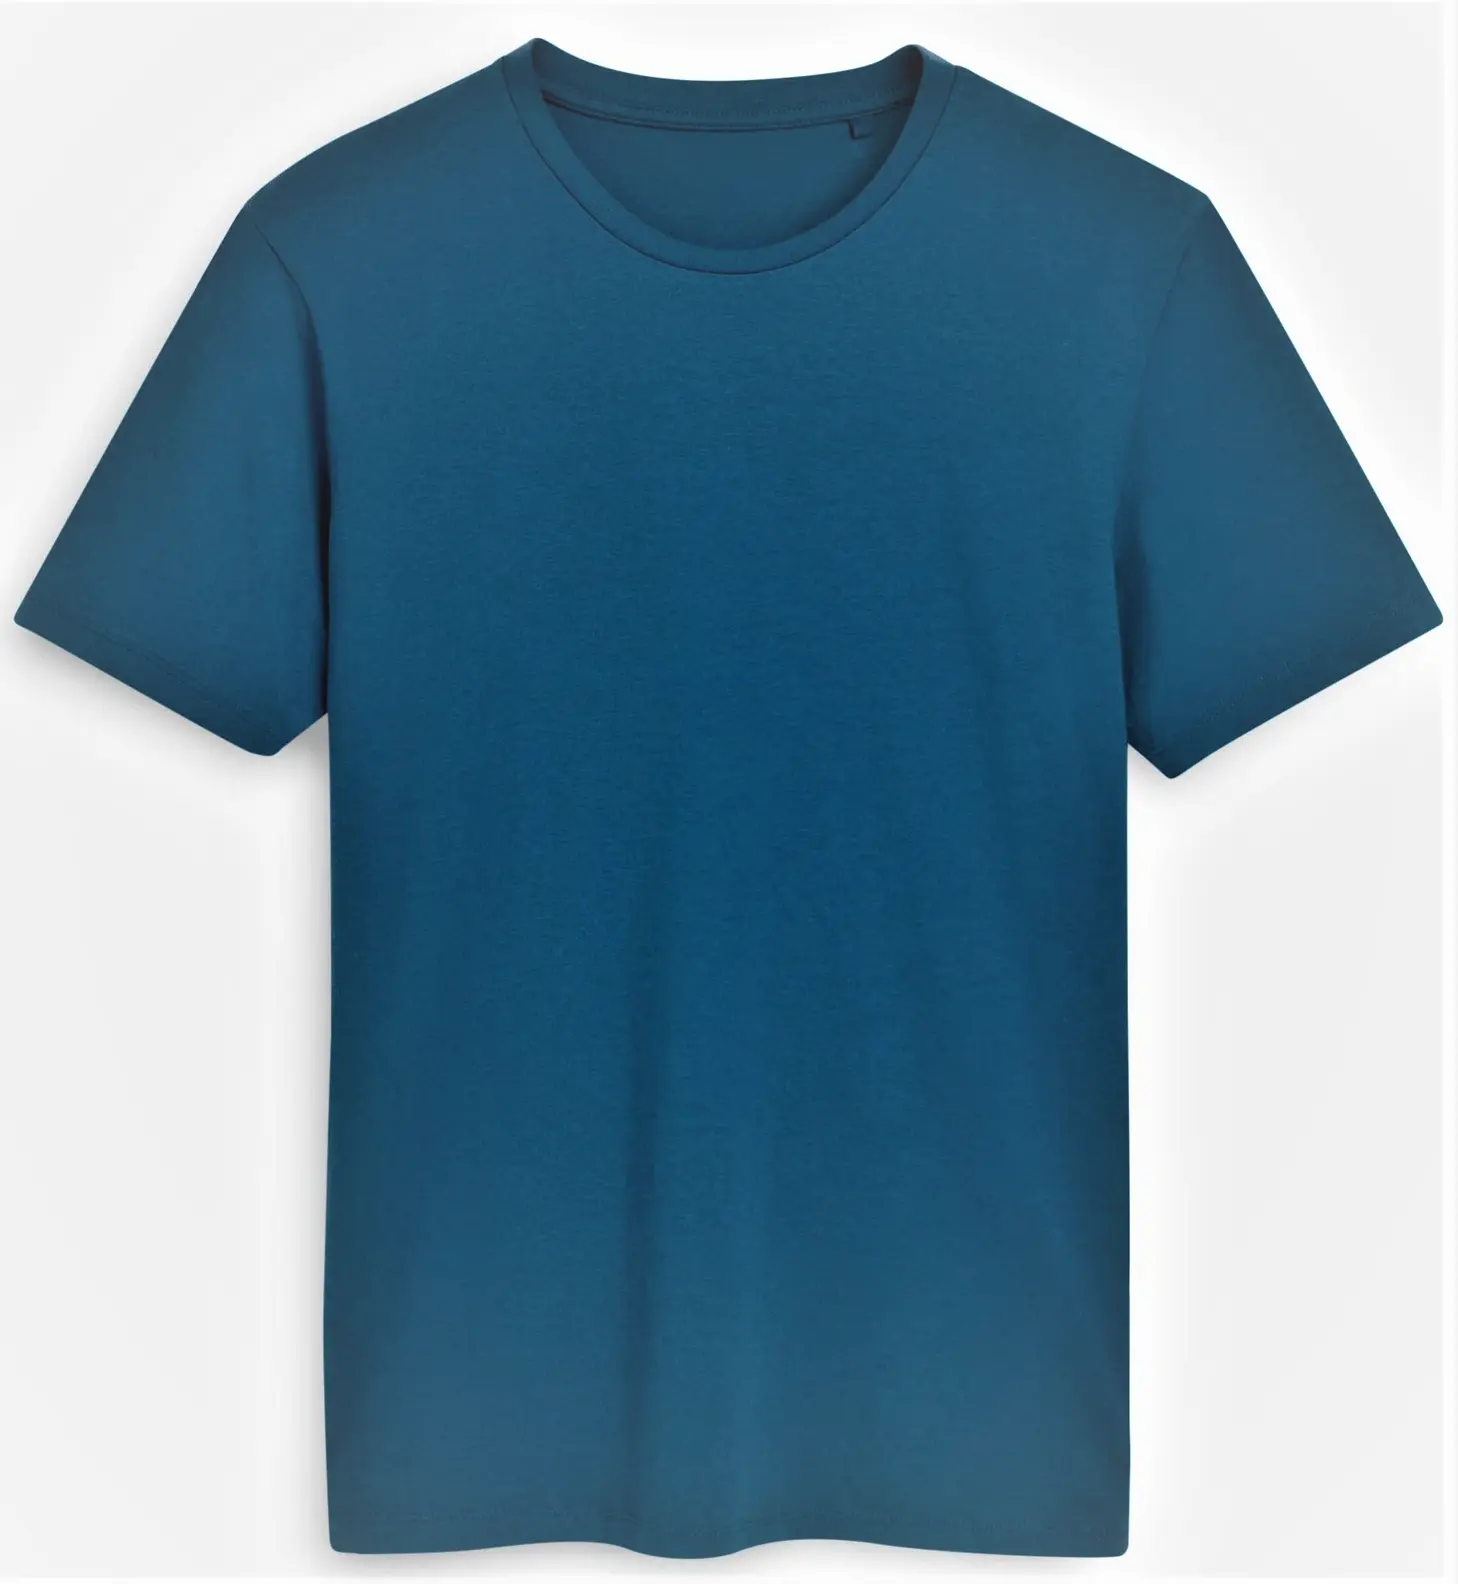 新着Tシャツカスタムロゴデザインコットンレーヨン混紡軽量半袖メンズTシャツ